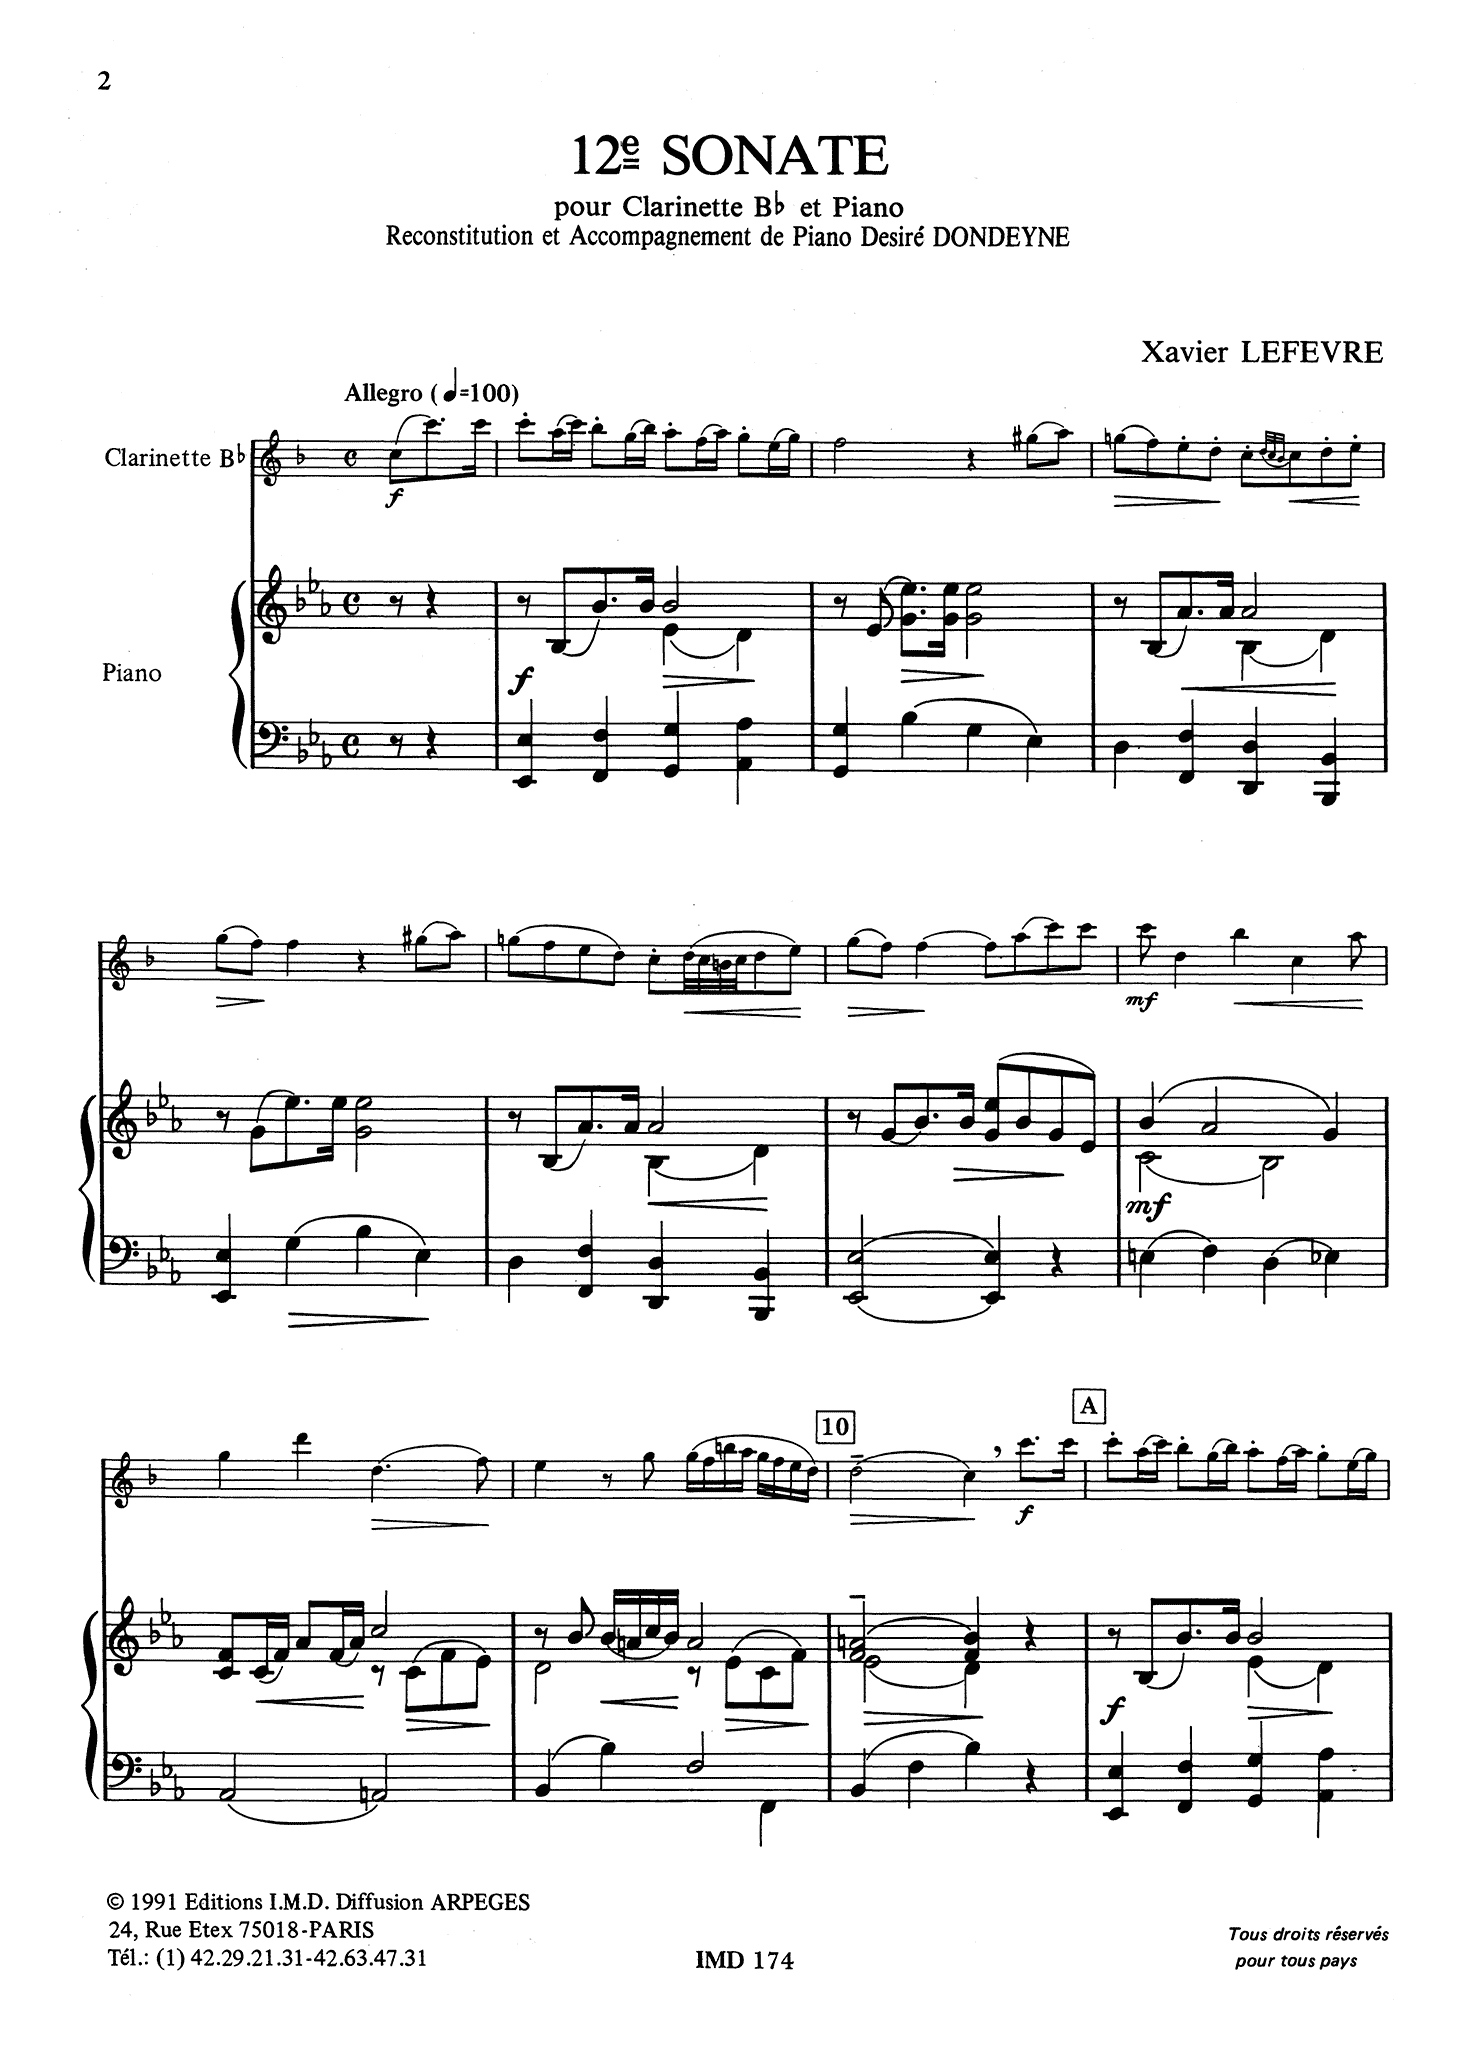 Lefèvre Clarinet Sonata No. 12 in F Major - Movement 1